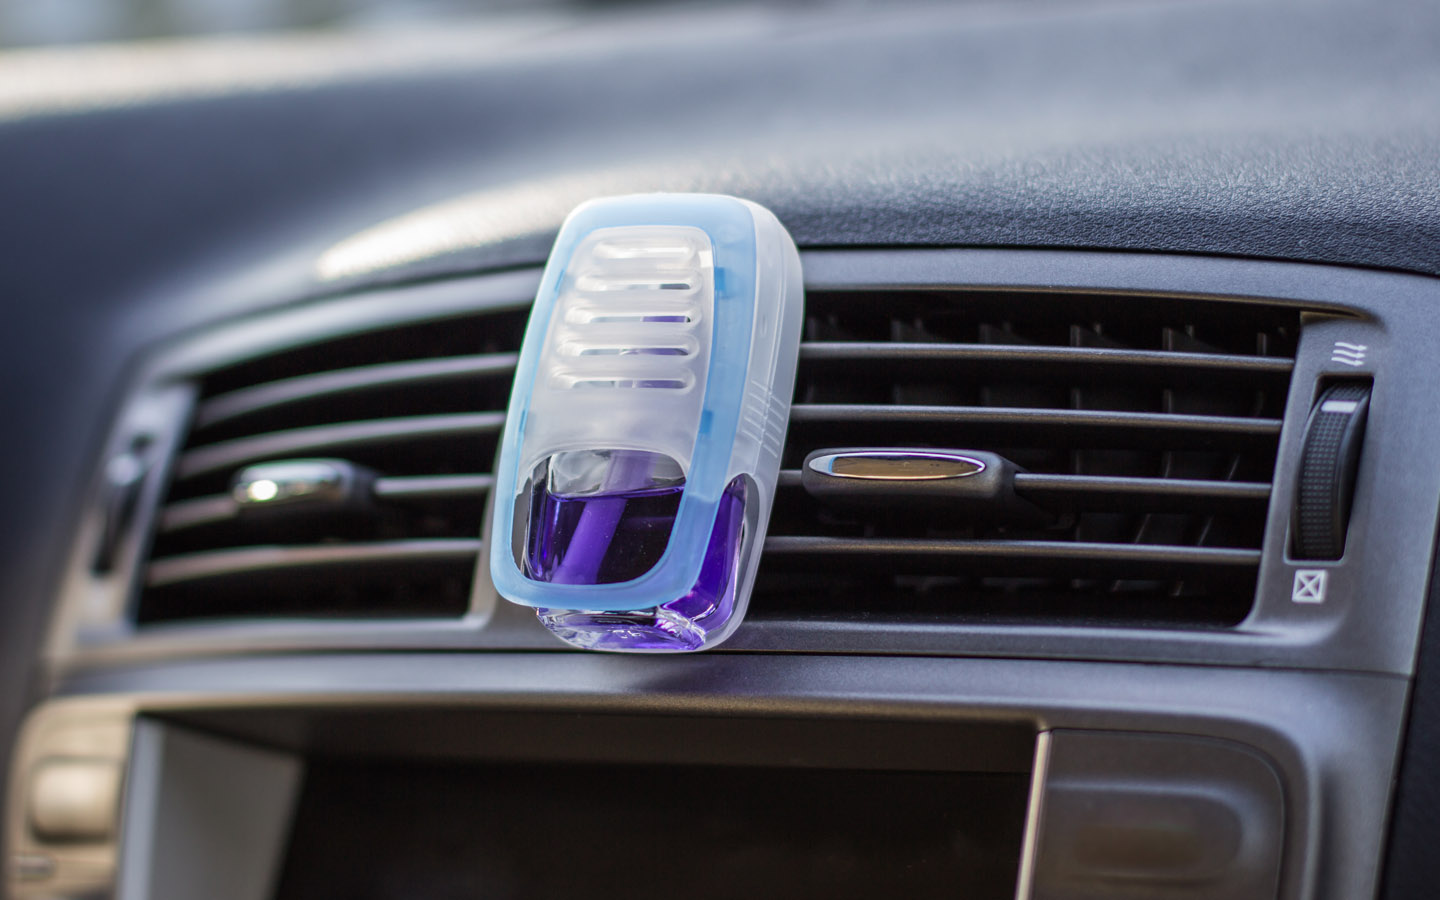 используйте освежители воздуха в машине, если хотите узнать, как избавиться от сигаретного запаха в машине